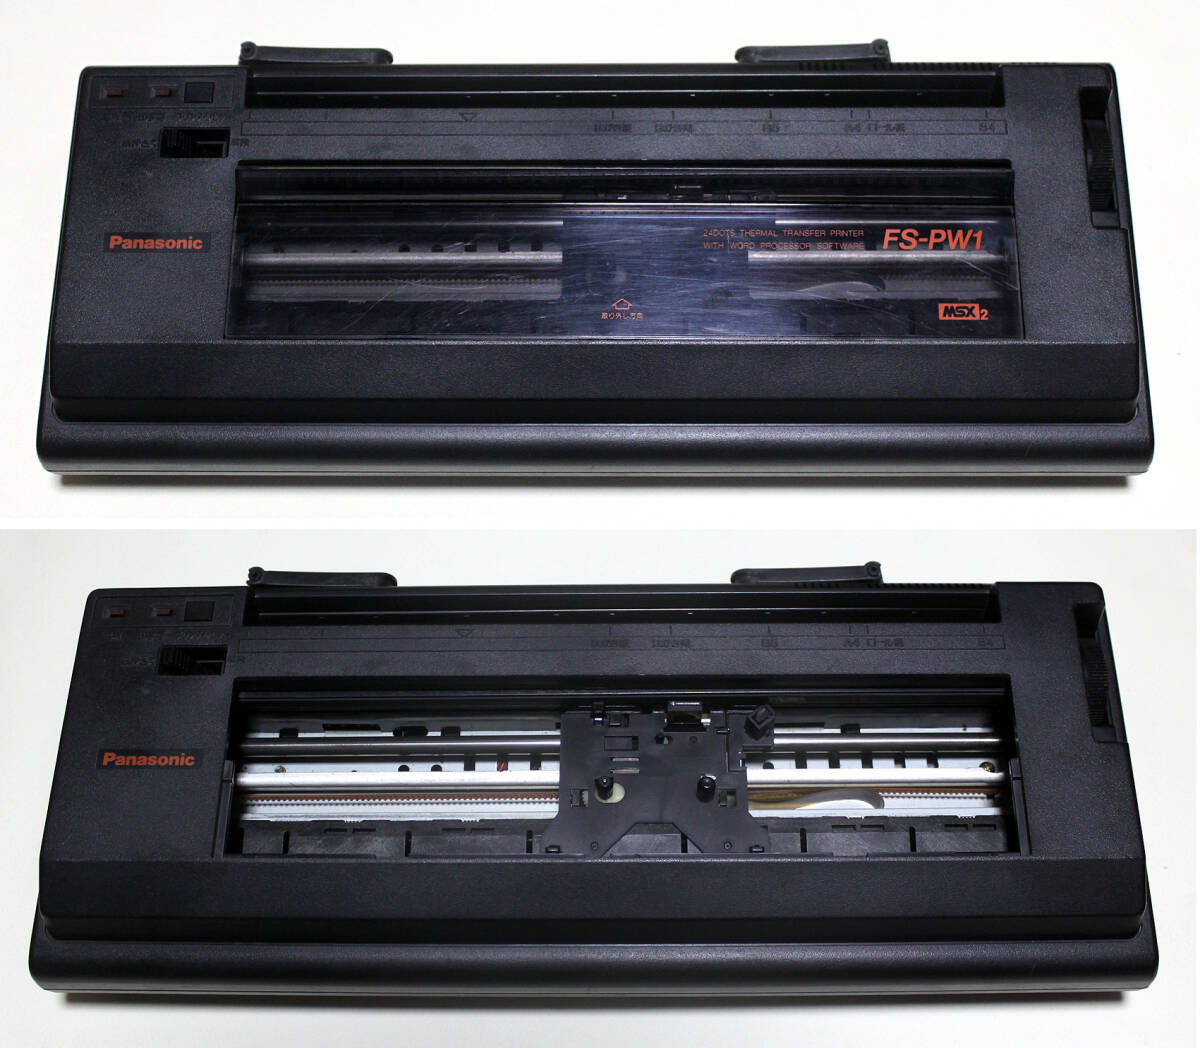  Panasonic MSX2 периферийные устройства [24 точка . транскрипция текстовой процессор * принтер FS-PW1] утиль | Showa Retro, Vintage 